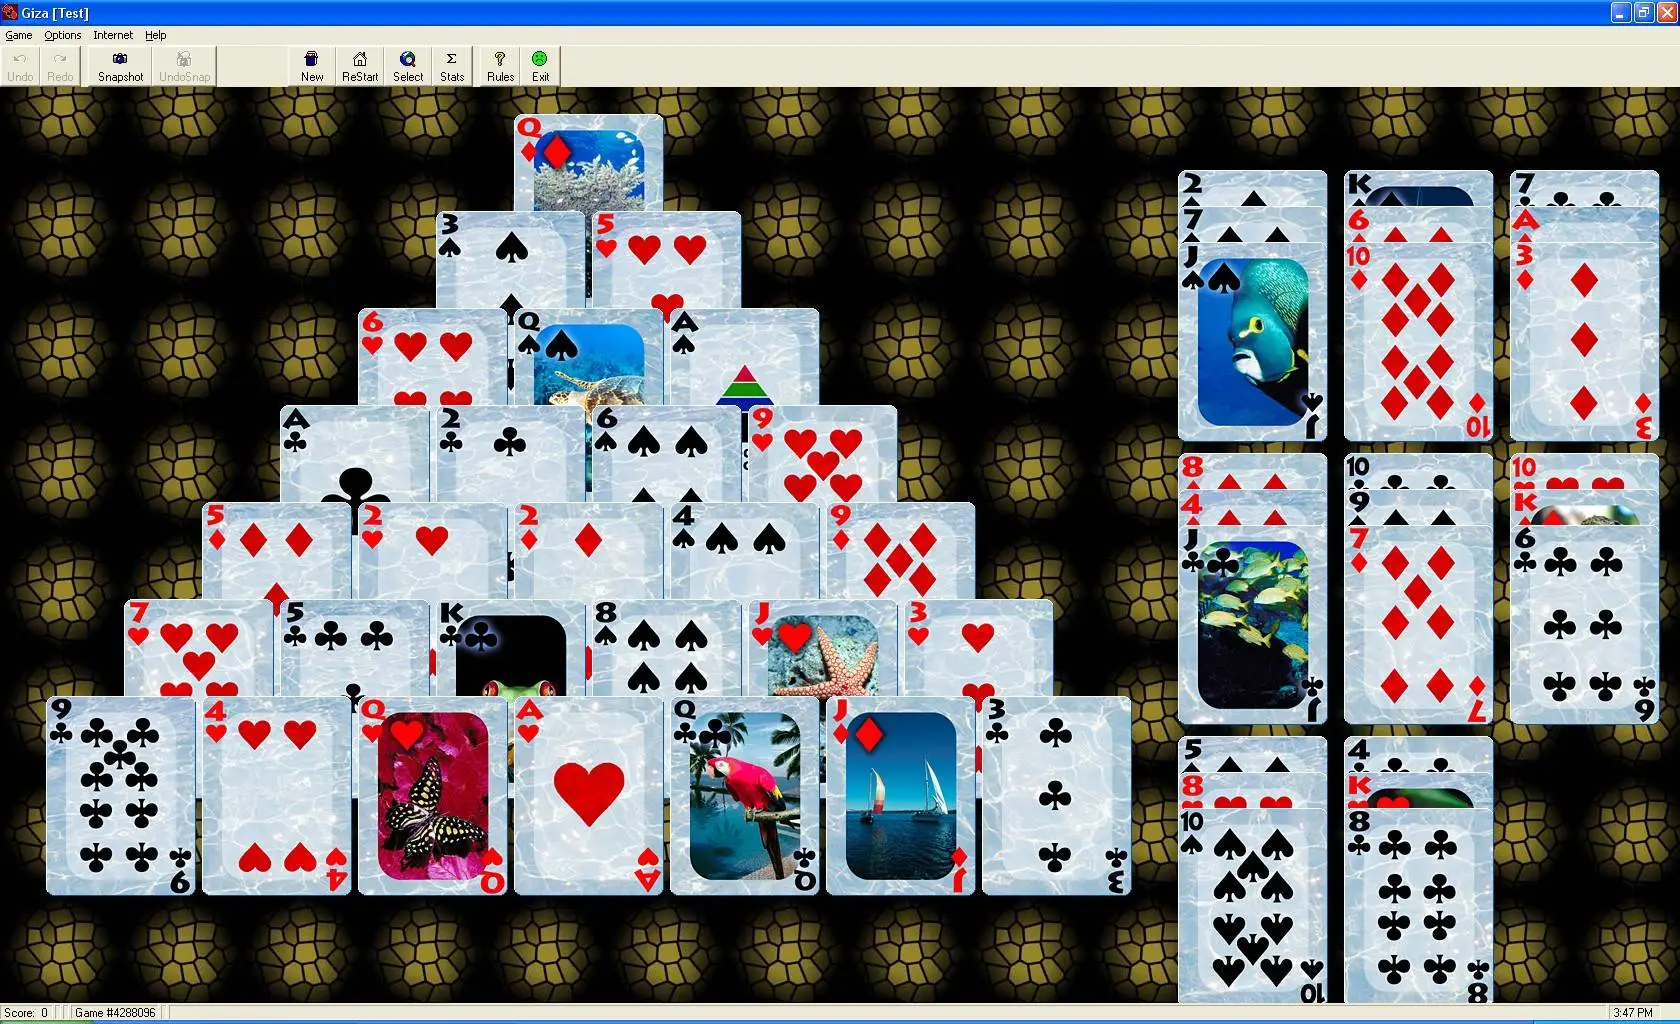 pretty good solitaire 500 2002